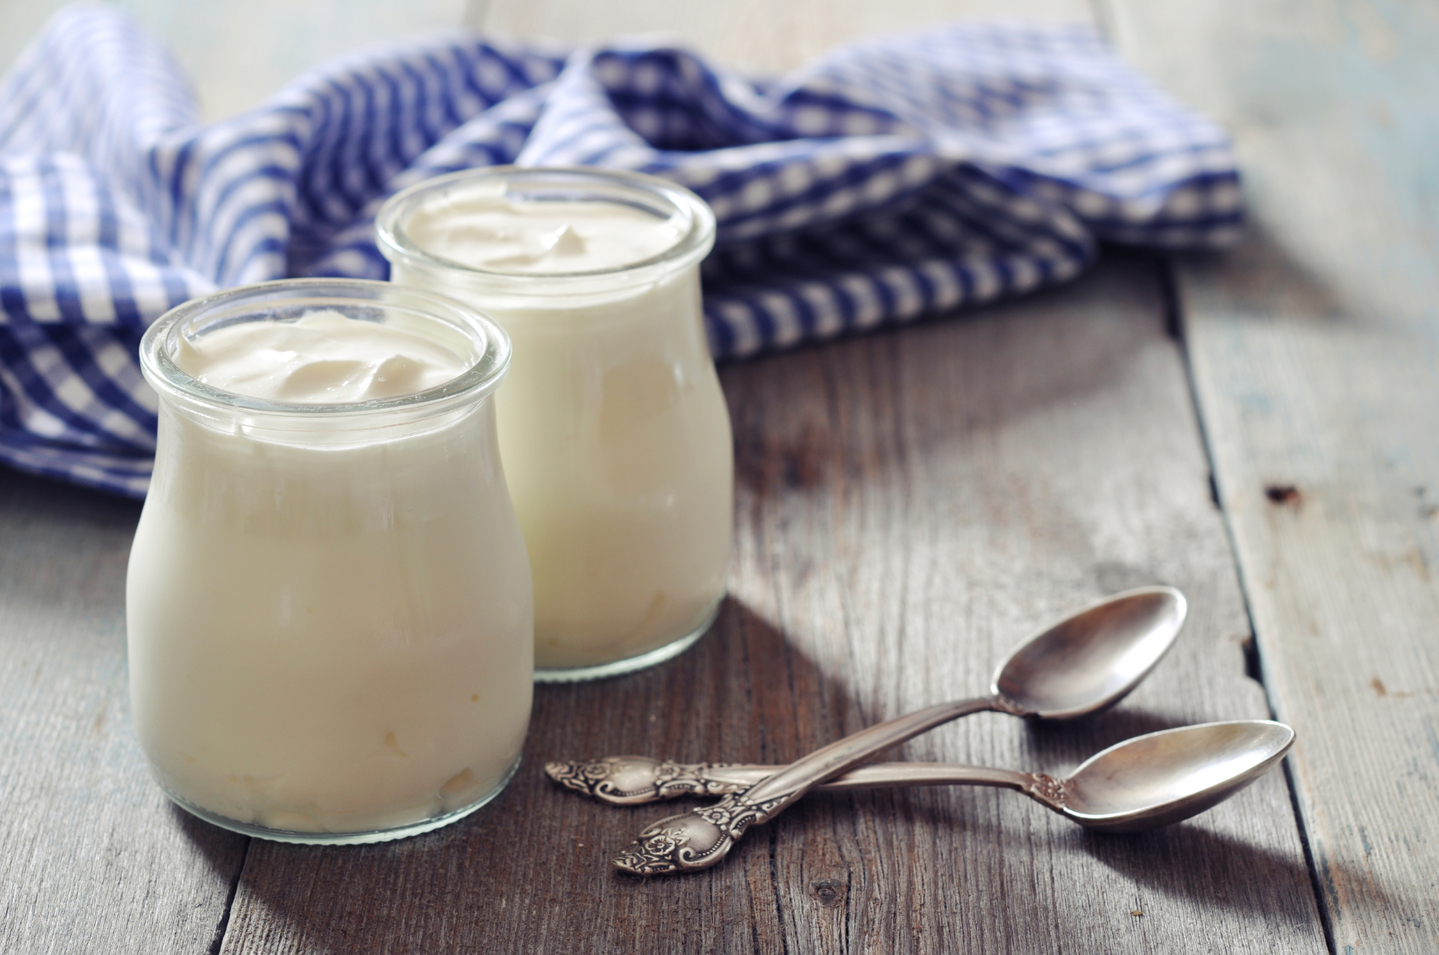 Термостатный йогурт: действительно ли он полезнее обычного?